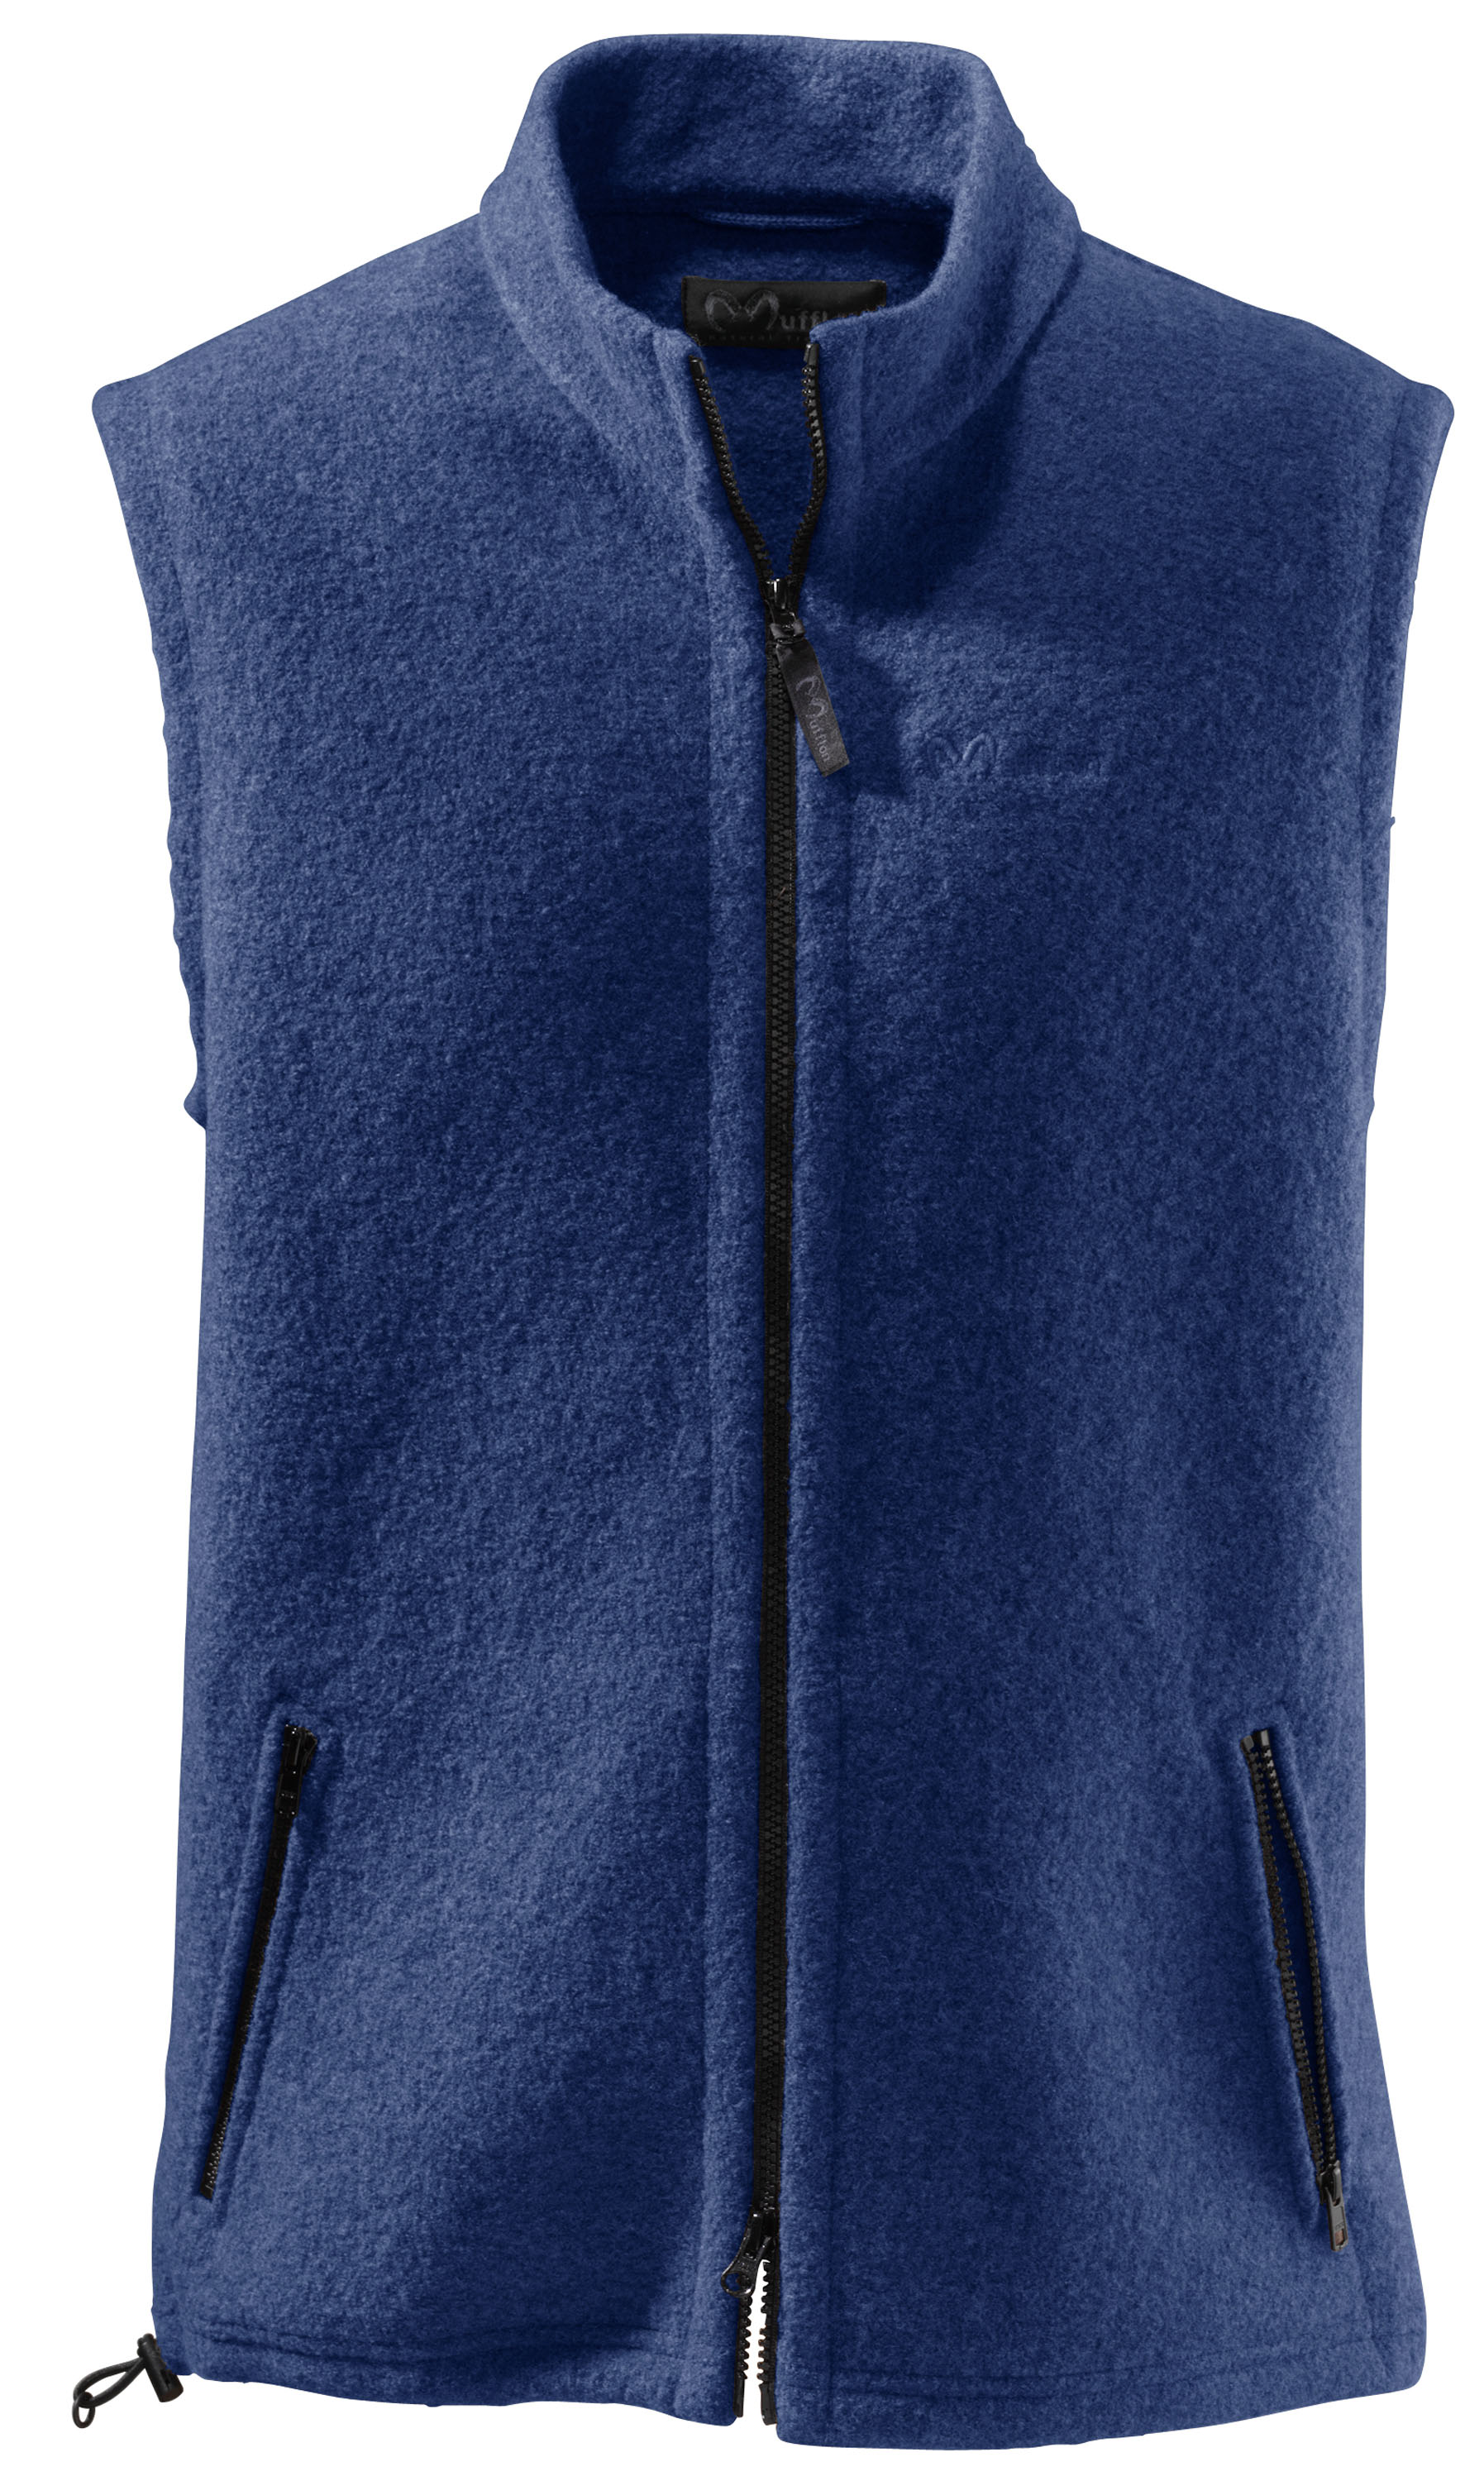 MUFFLON Weste Luke – Warme Wolle. Eine Weste aus Walkwolle für viel Wärme am Körper und viel Bewegungsfreiheit in den Armen. € 199,90 © Mufflon